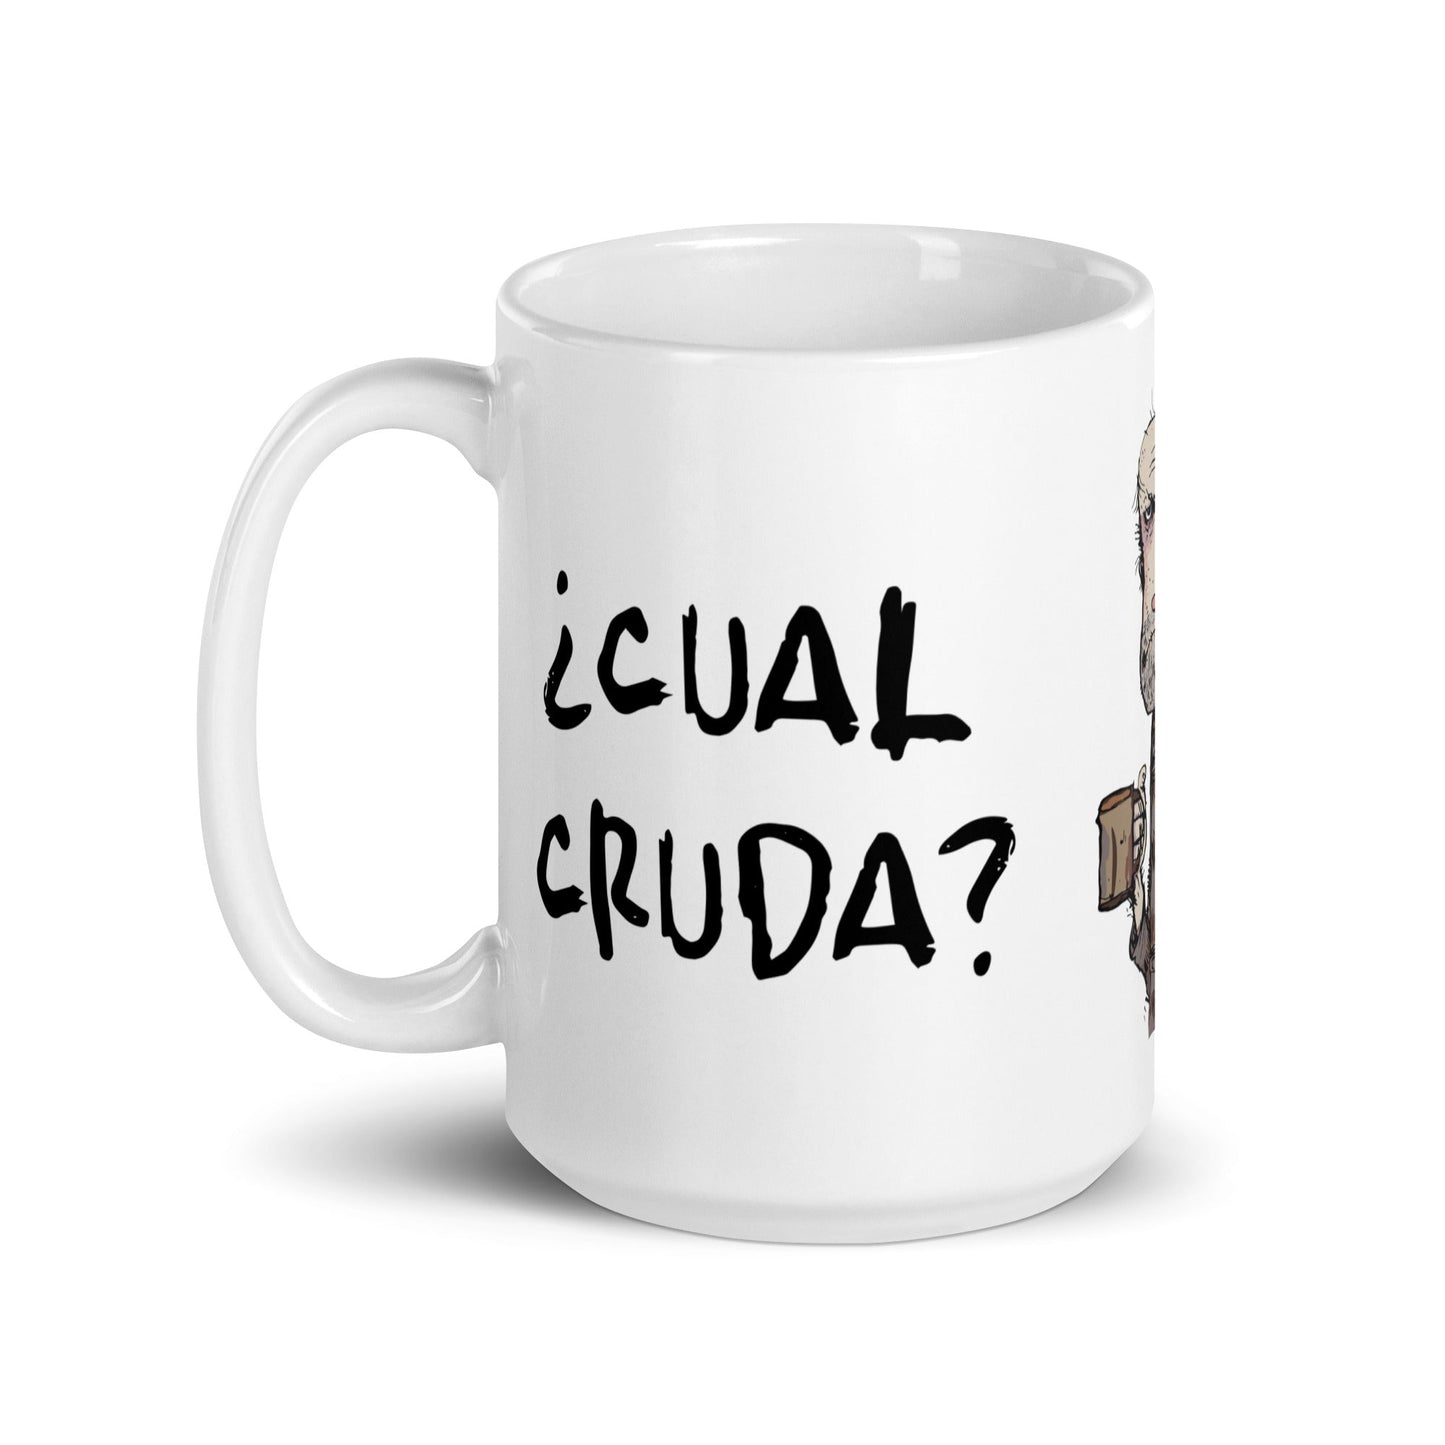 Taza de Café - Borracho, Cual Cruda?